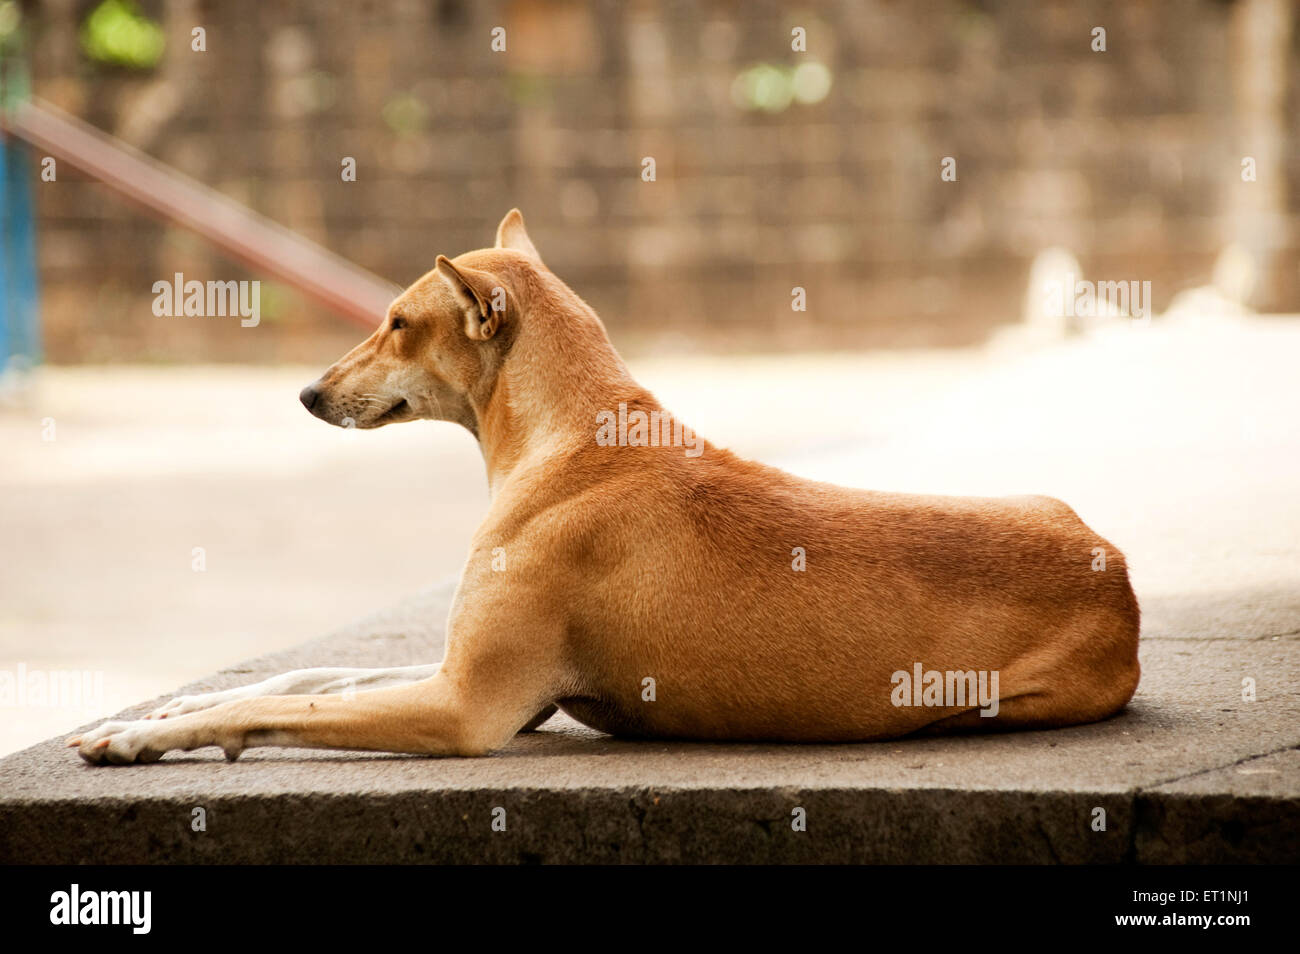 sitting dog profile Stock Photo